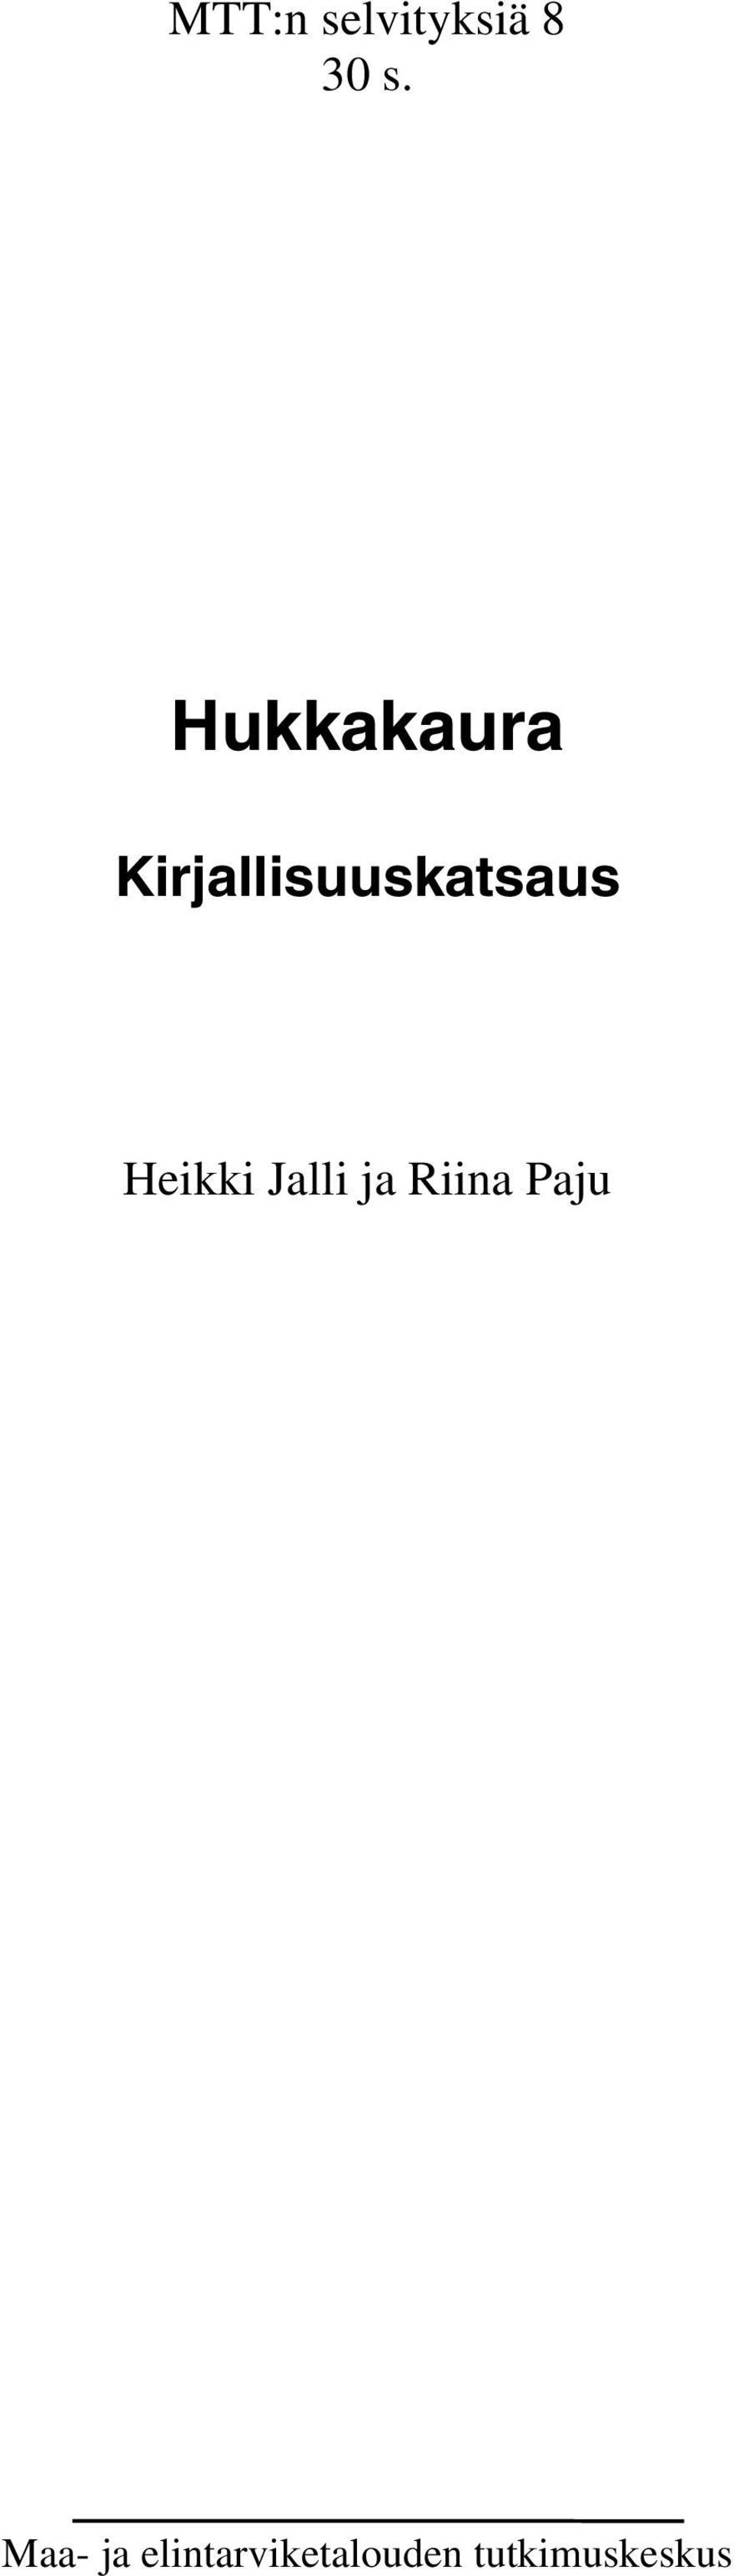 Heikki Jalli ja Riina Paju Maa-